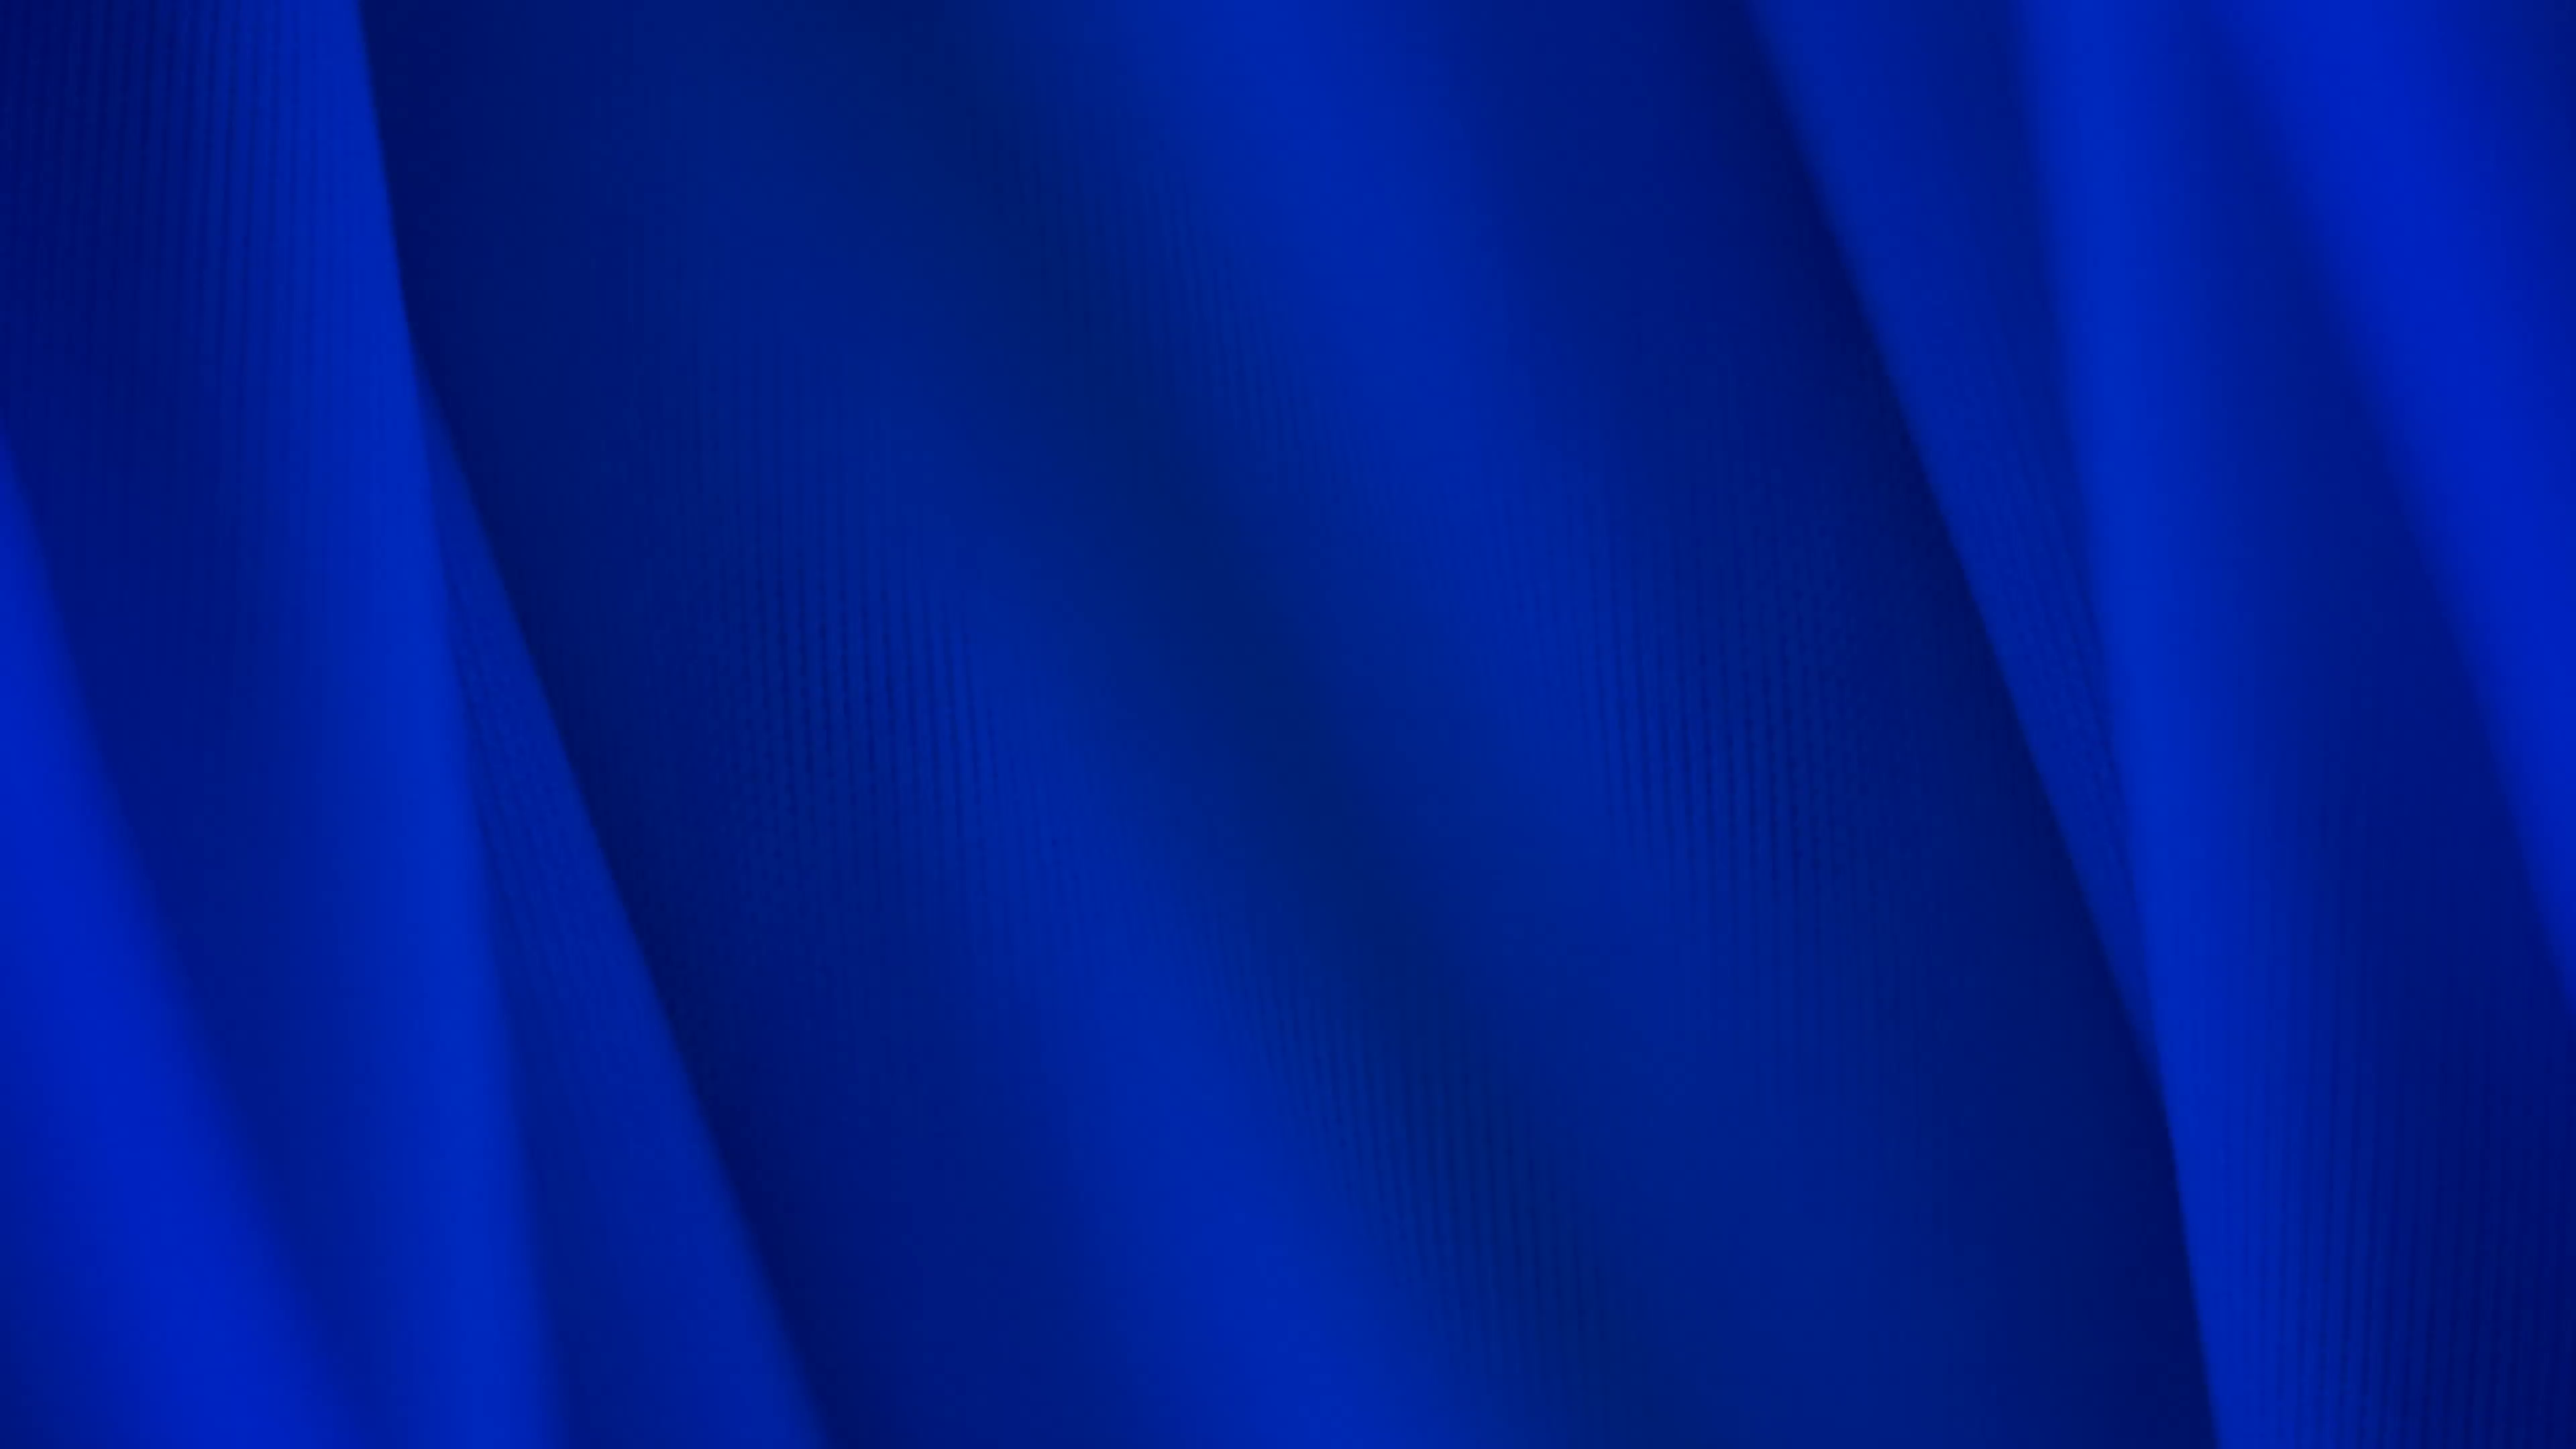 dark-blue-background-4k_ekeftjj9ml__F0000